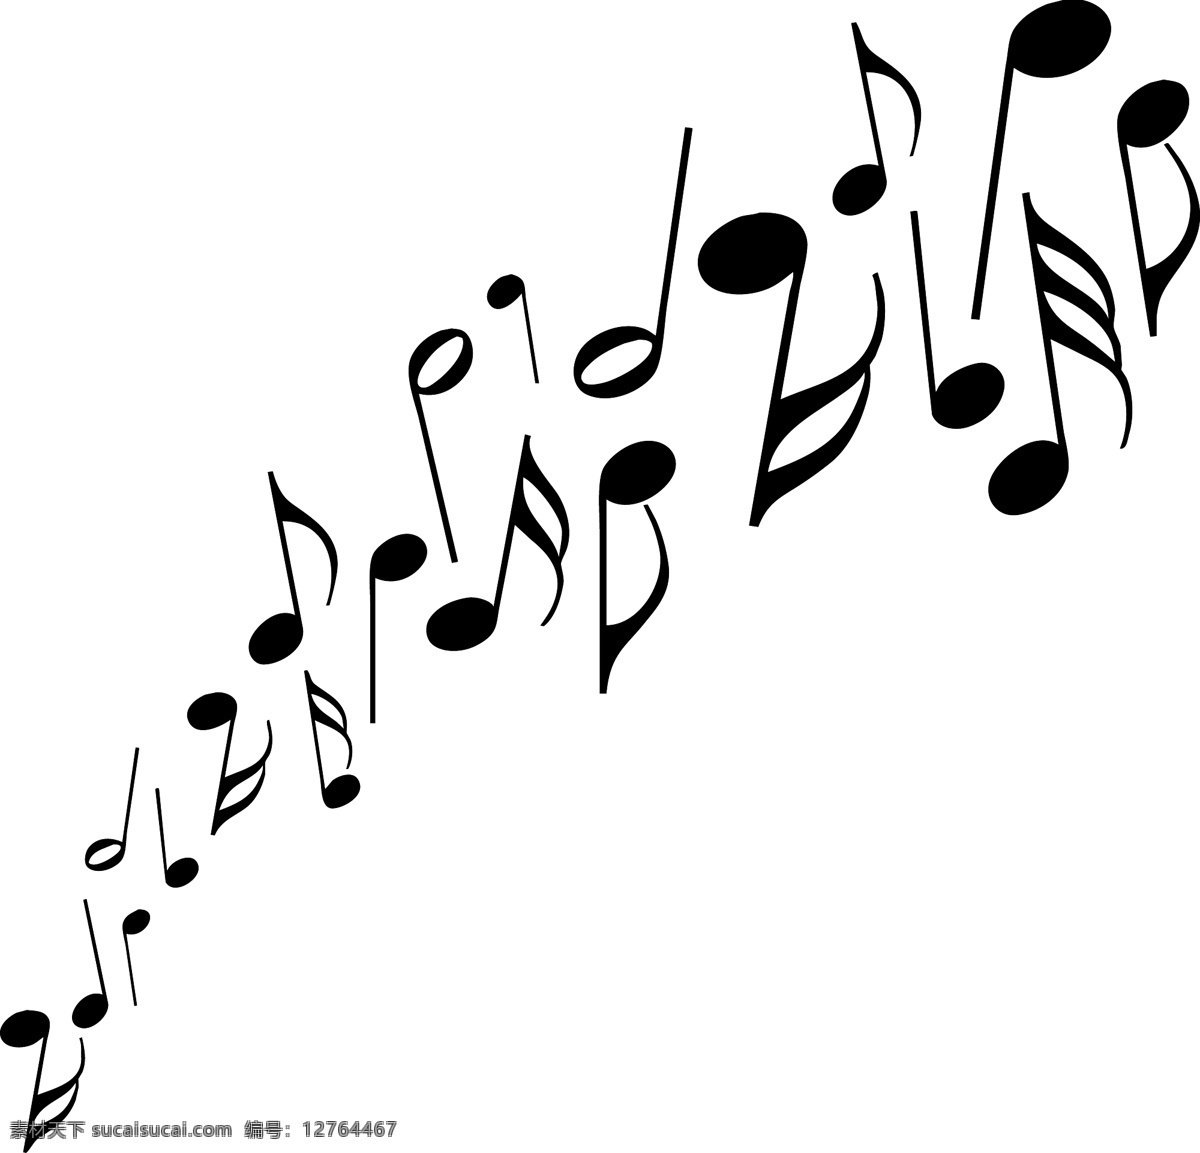 音乐 音符 音乐素材 休止符 矢量图 其他矢量图